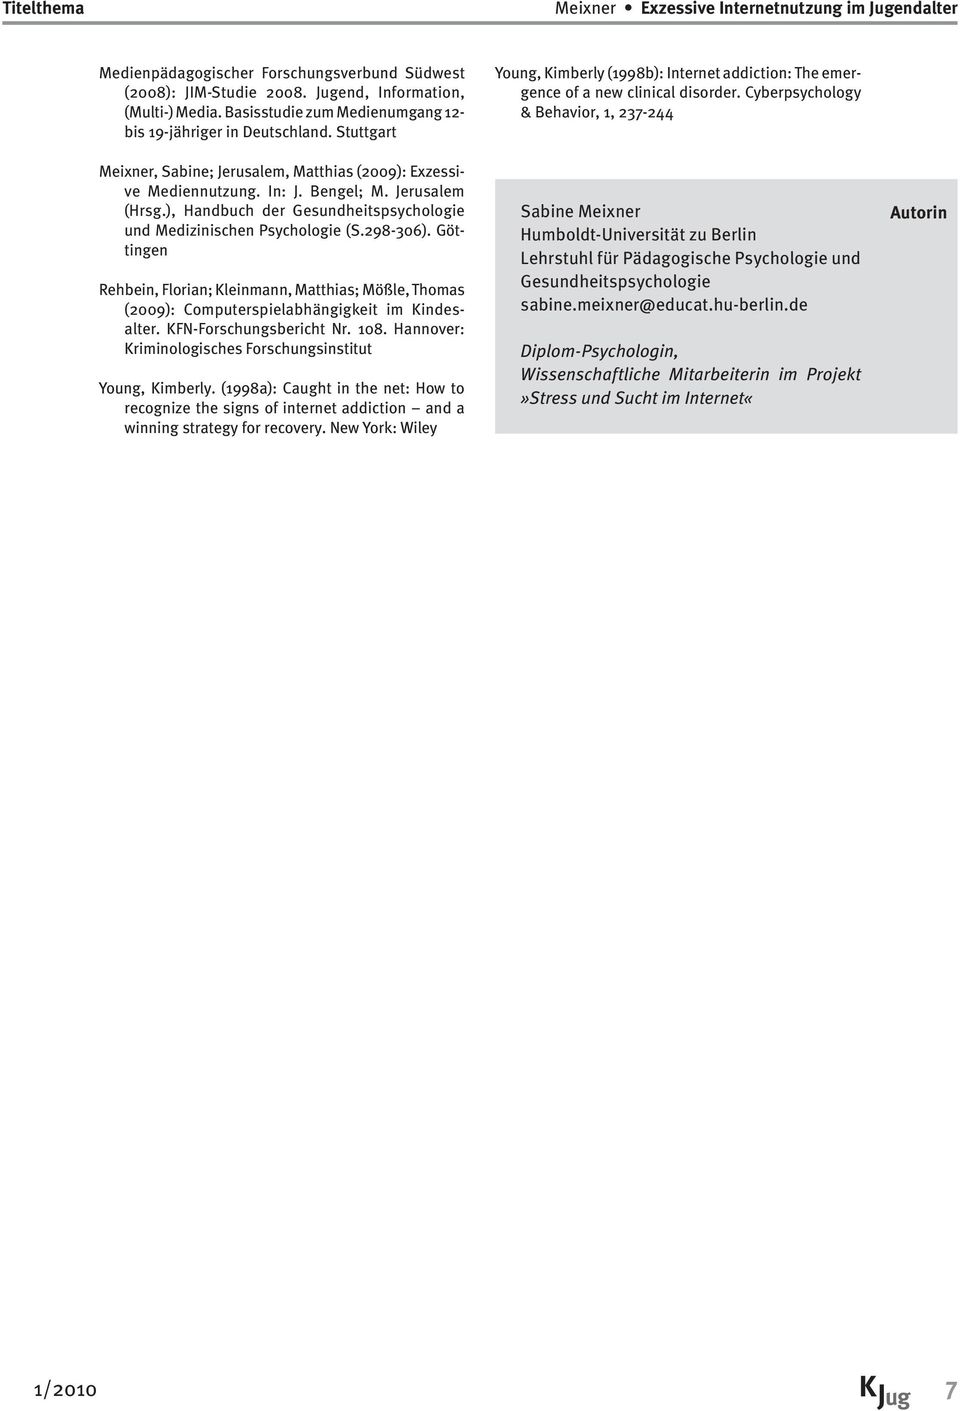 ), Handbuch der Gesundheitspsychologie und Medizinischen Psychologie (S.298-306). Göttingen Rehbein, Florian; Kleinmann, Matthias; Mößle, Thomas (2009): Computerspielabhängigkeit im Kindesalter.